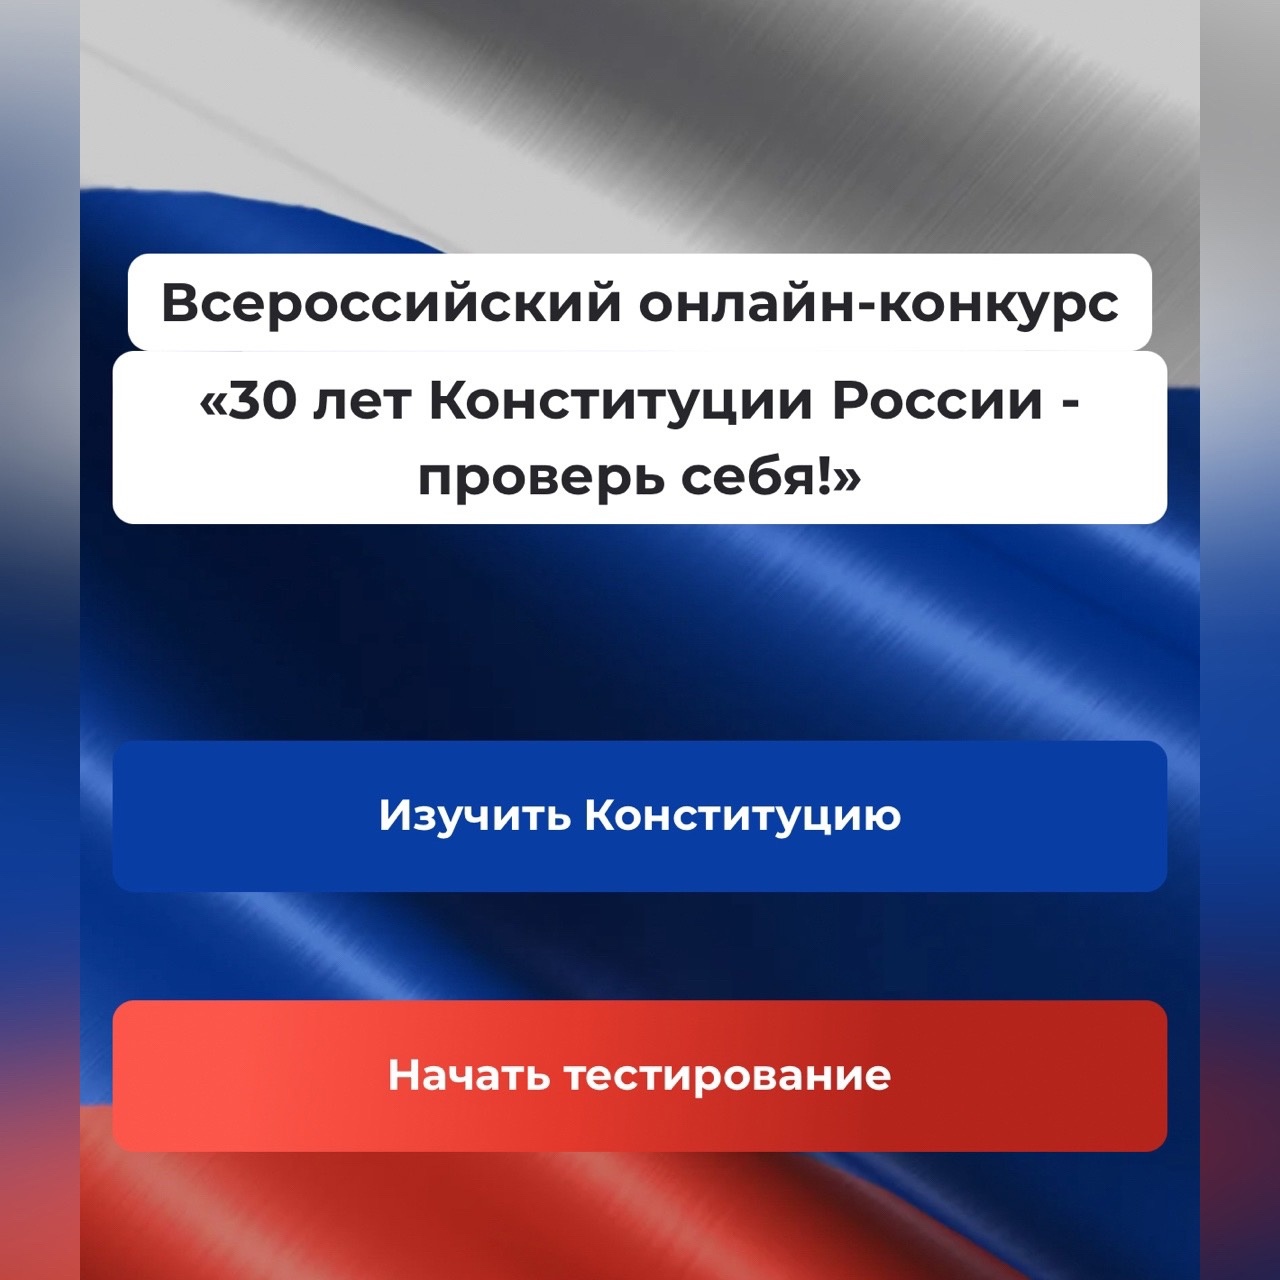 Смолян приглашают к участию в конкурсе «30 лет Конституции России – проверь себя!»